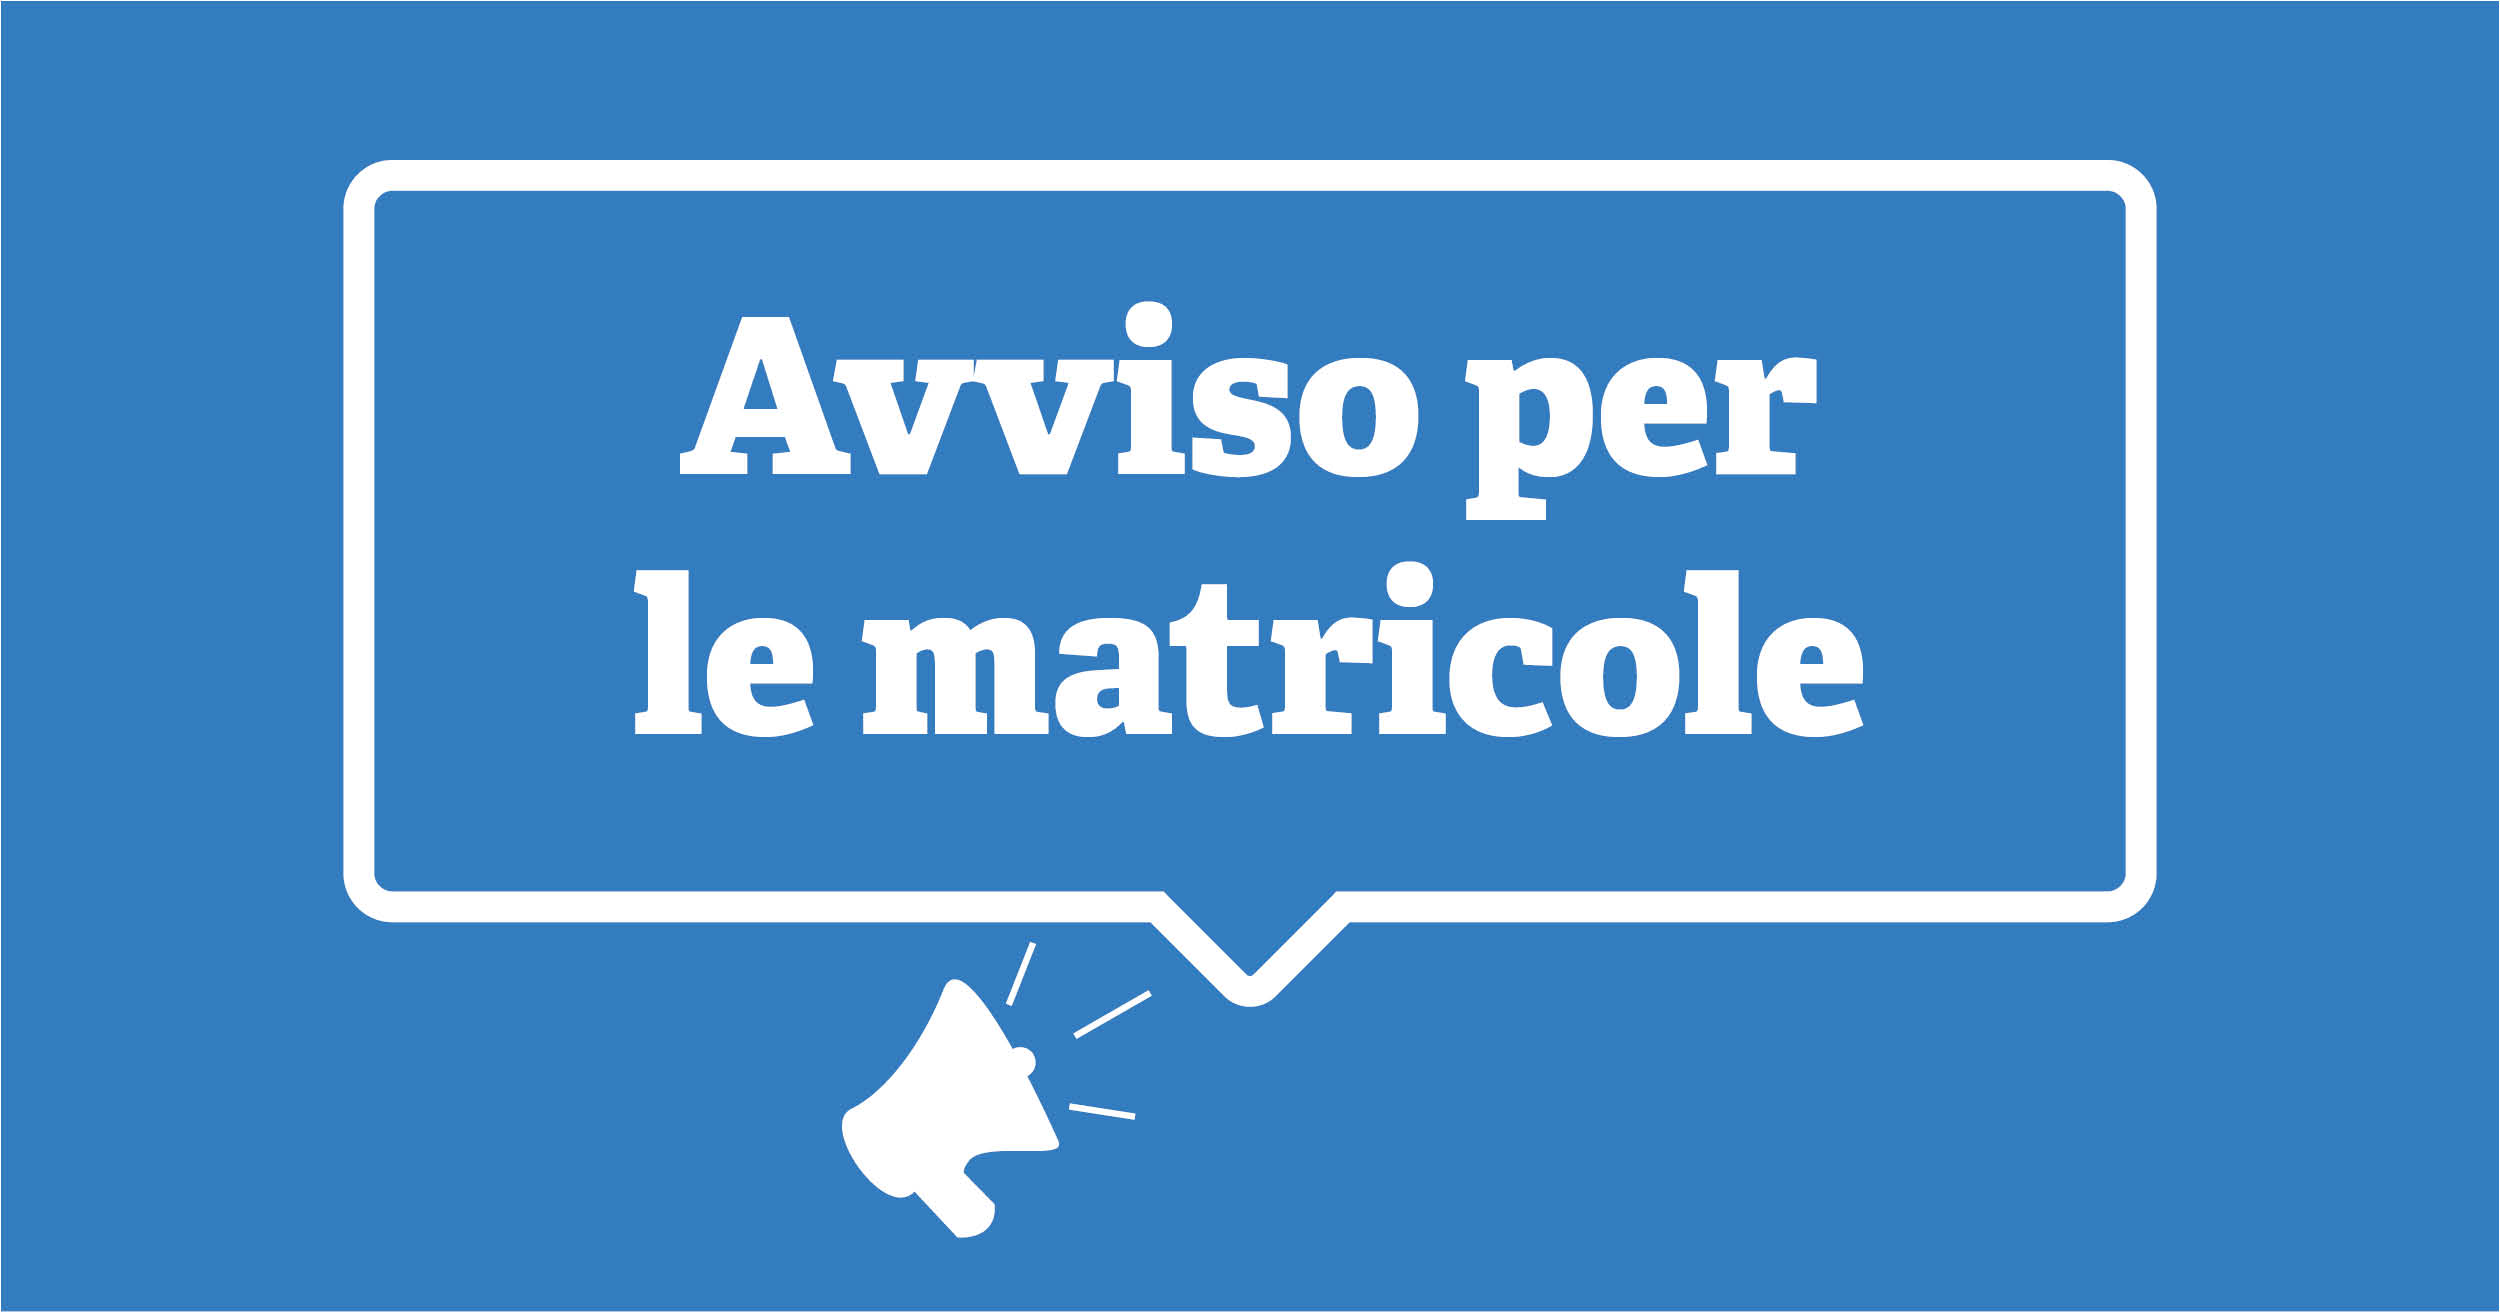 avviso_per_matricole